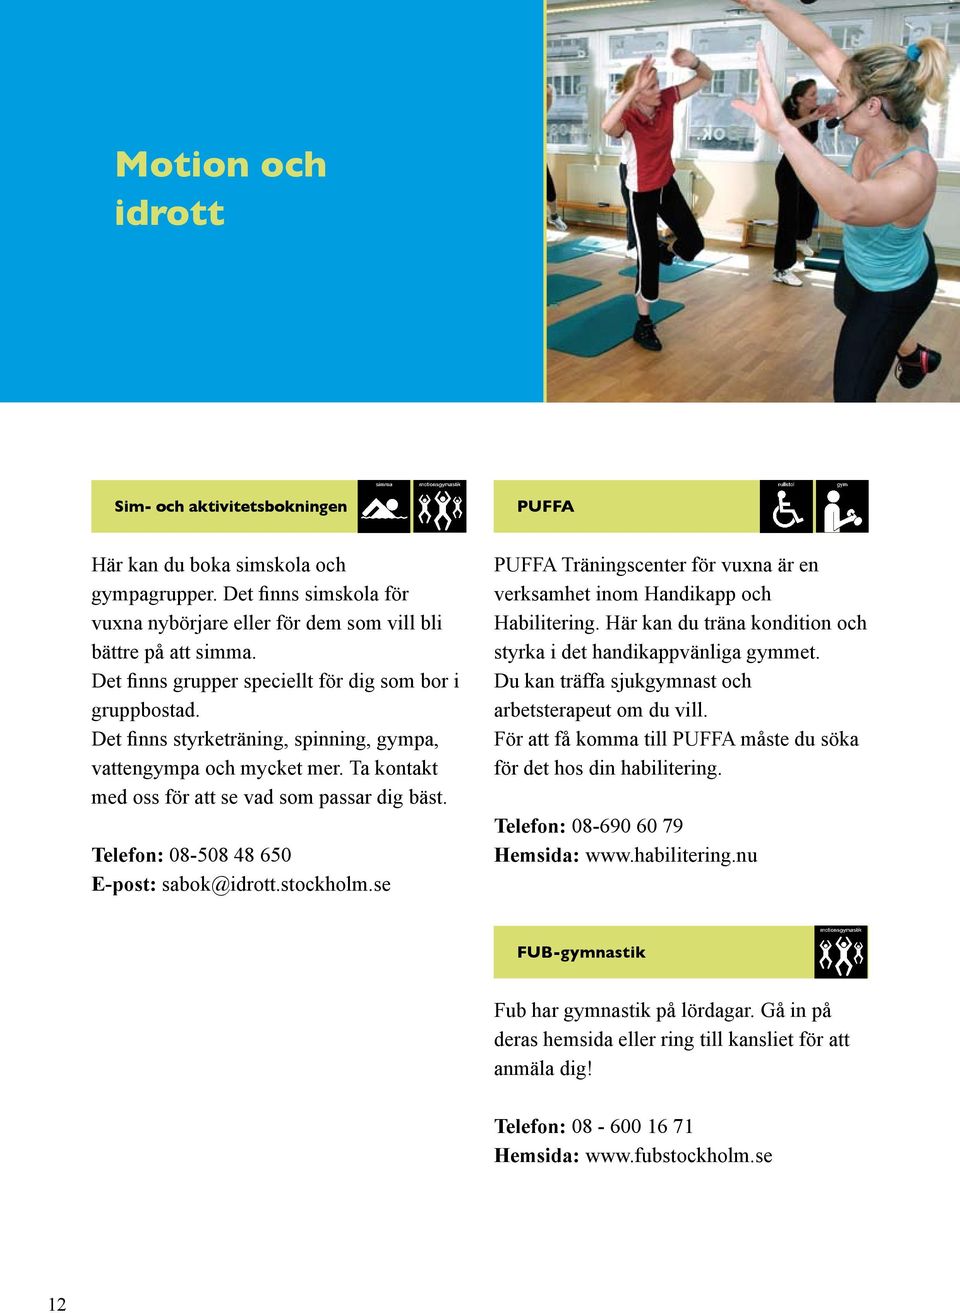 Telefon: 08-508 48 650 E-post: sabok@idrott.stockholm.se PUFFA Träningscenter för vuxna är en verksamhet inom Handikapp och Habilitering.